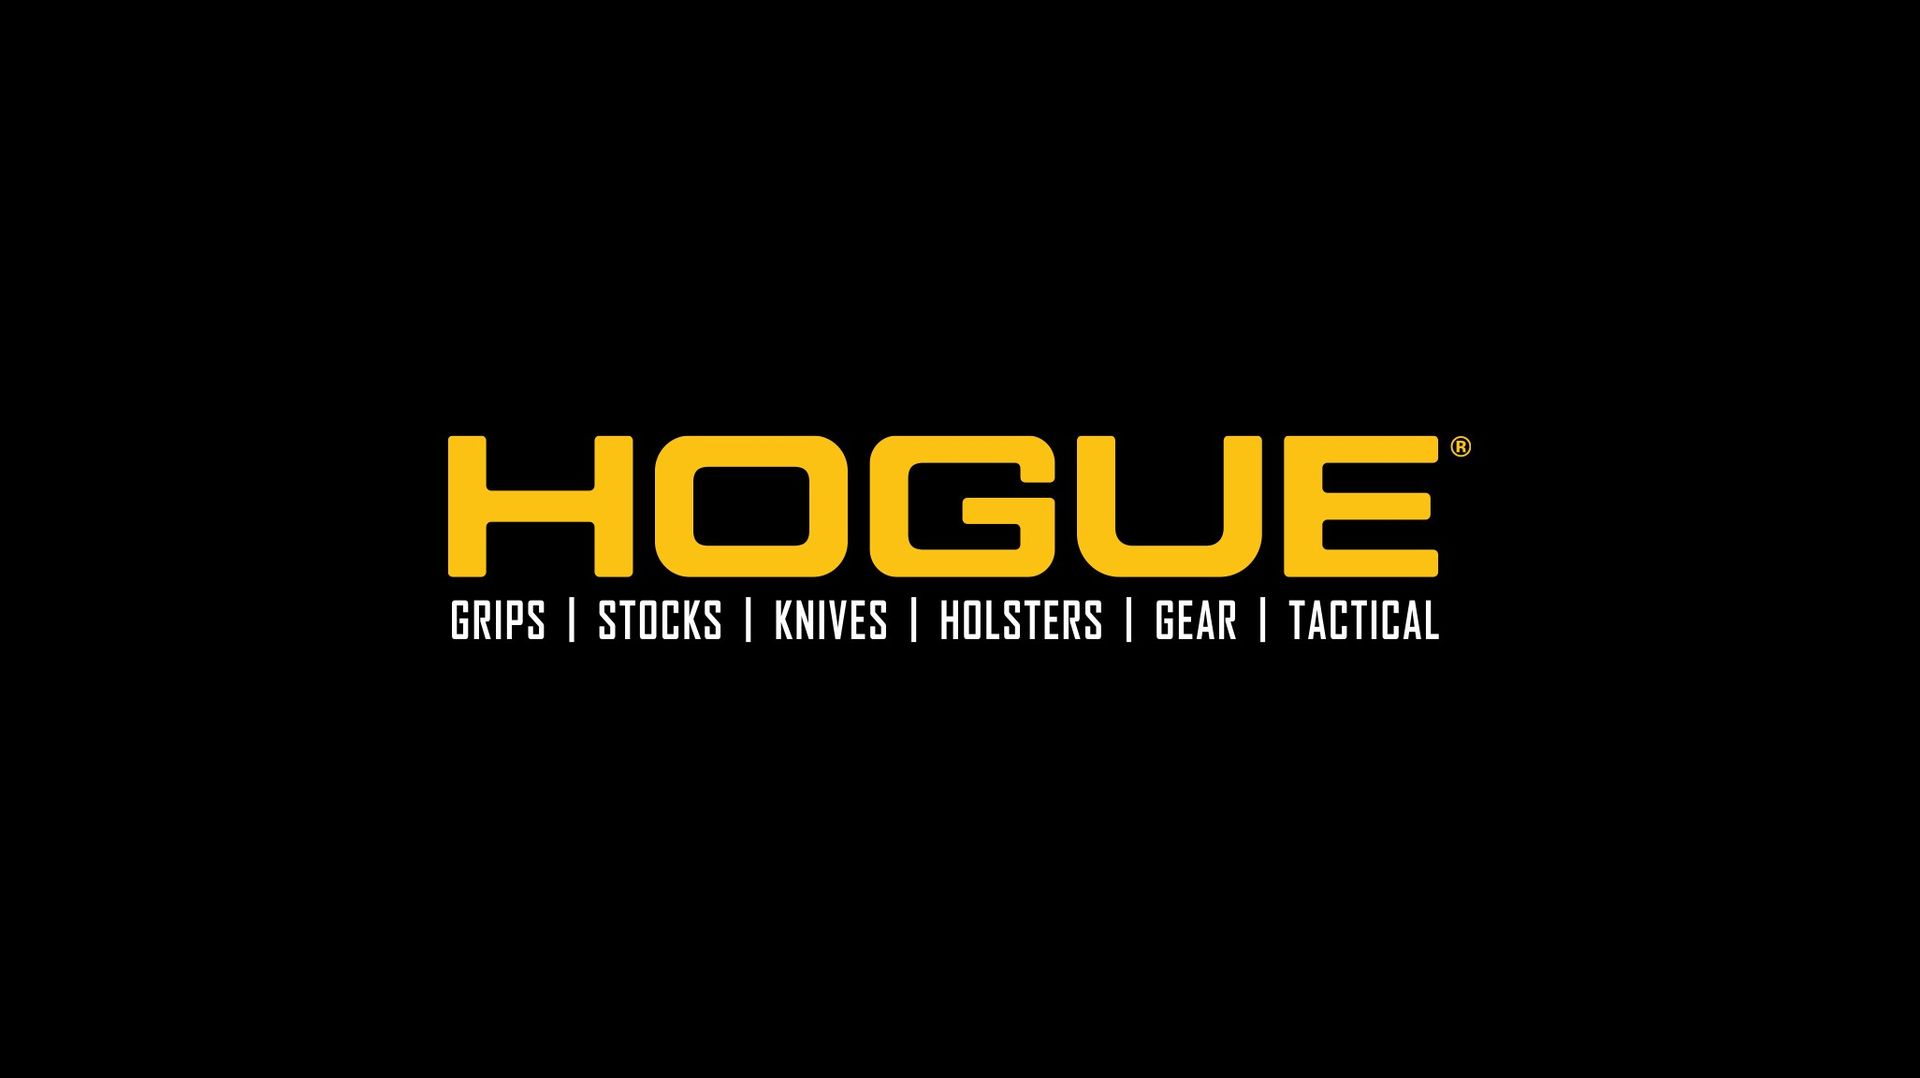 Brand: Hogue